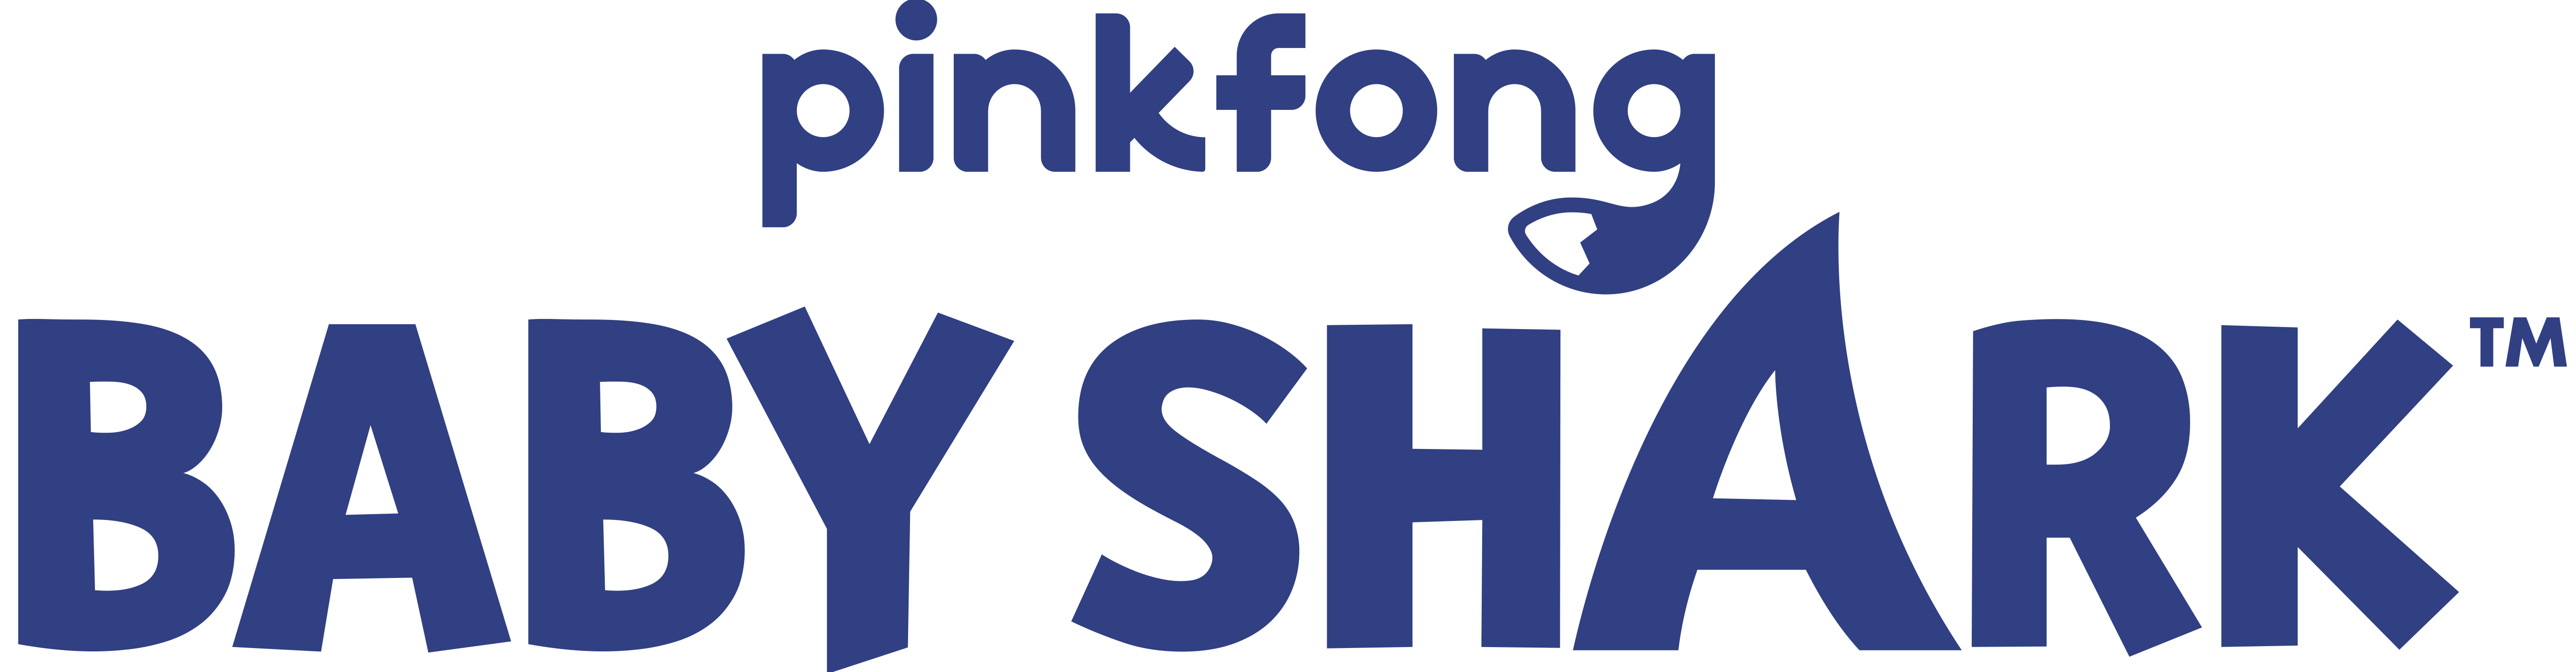 Logo_Babyshark